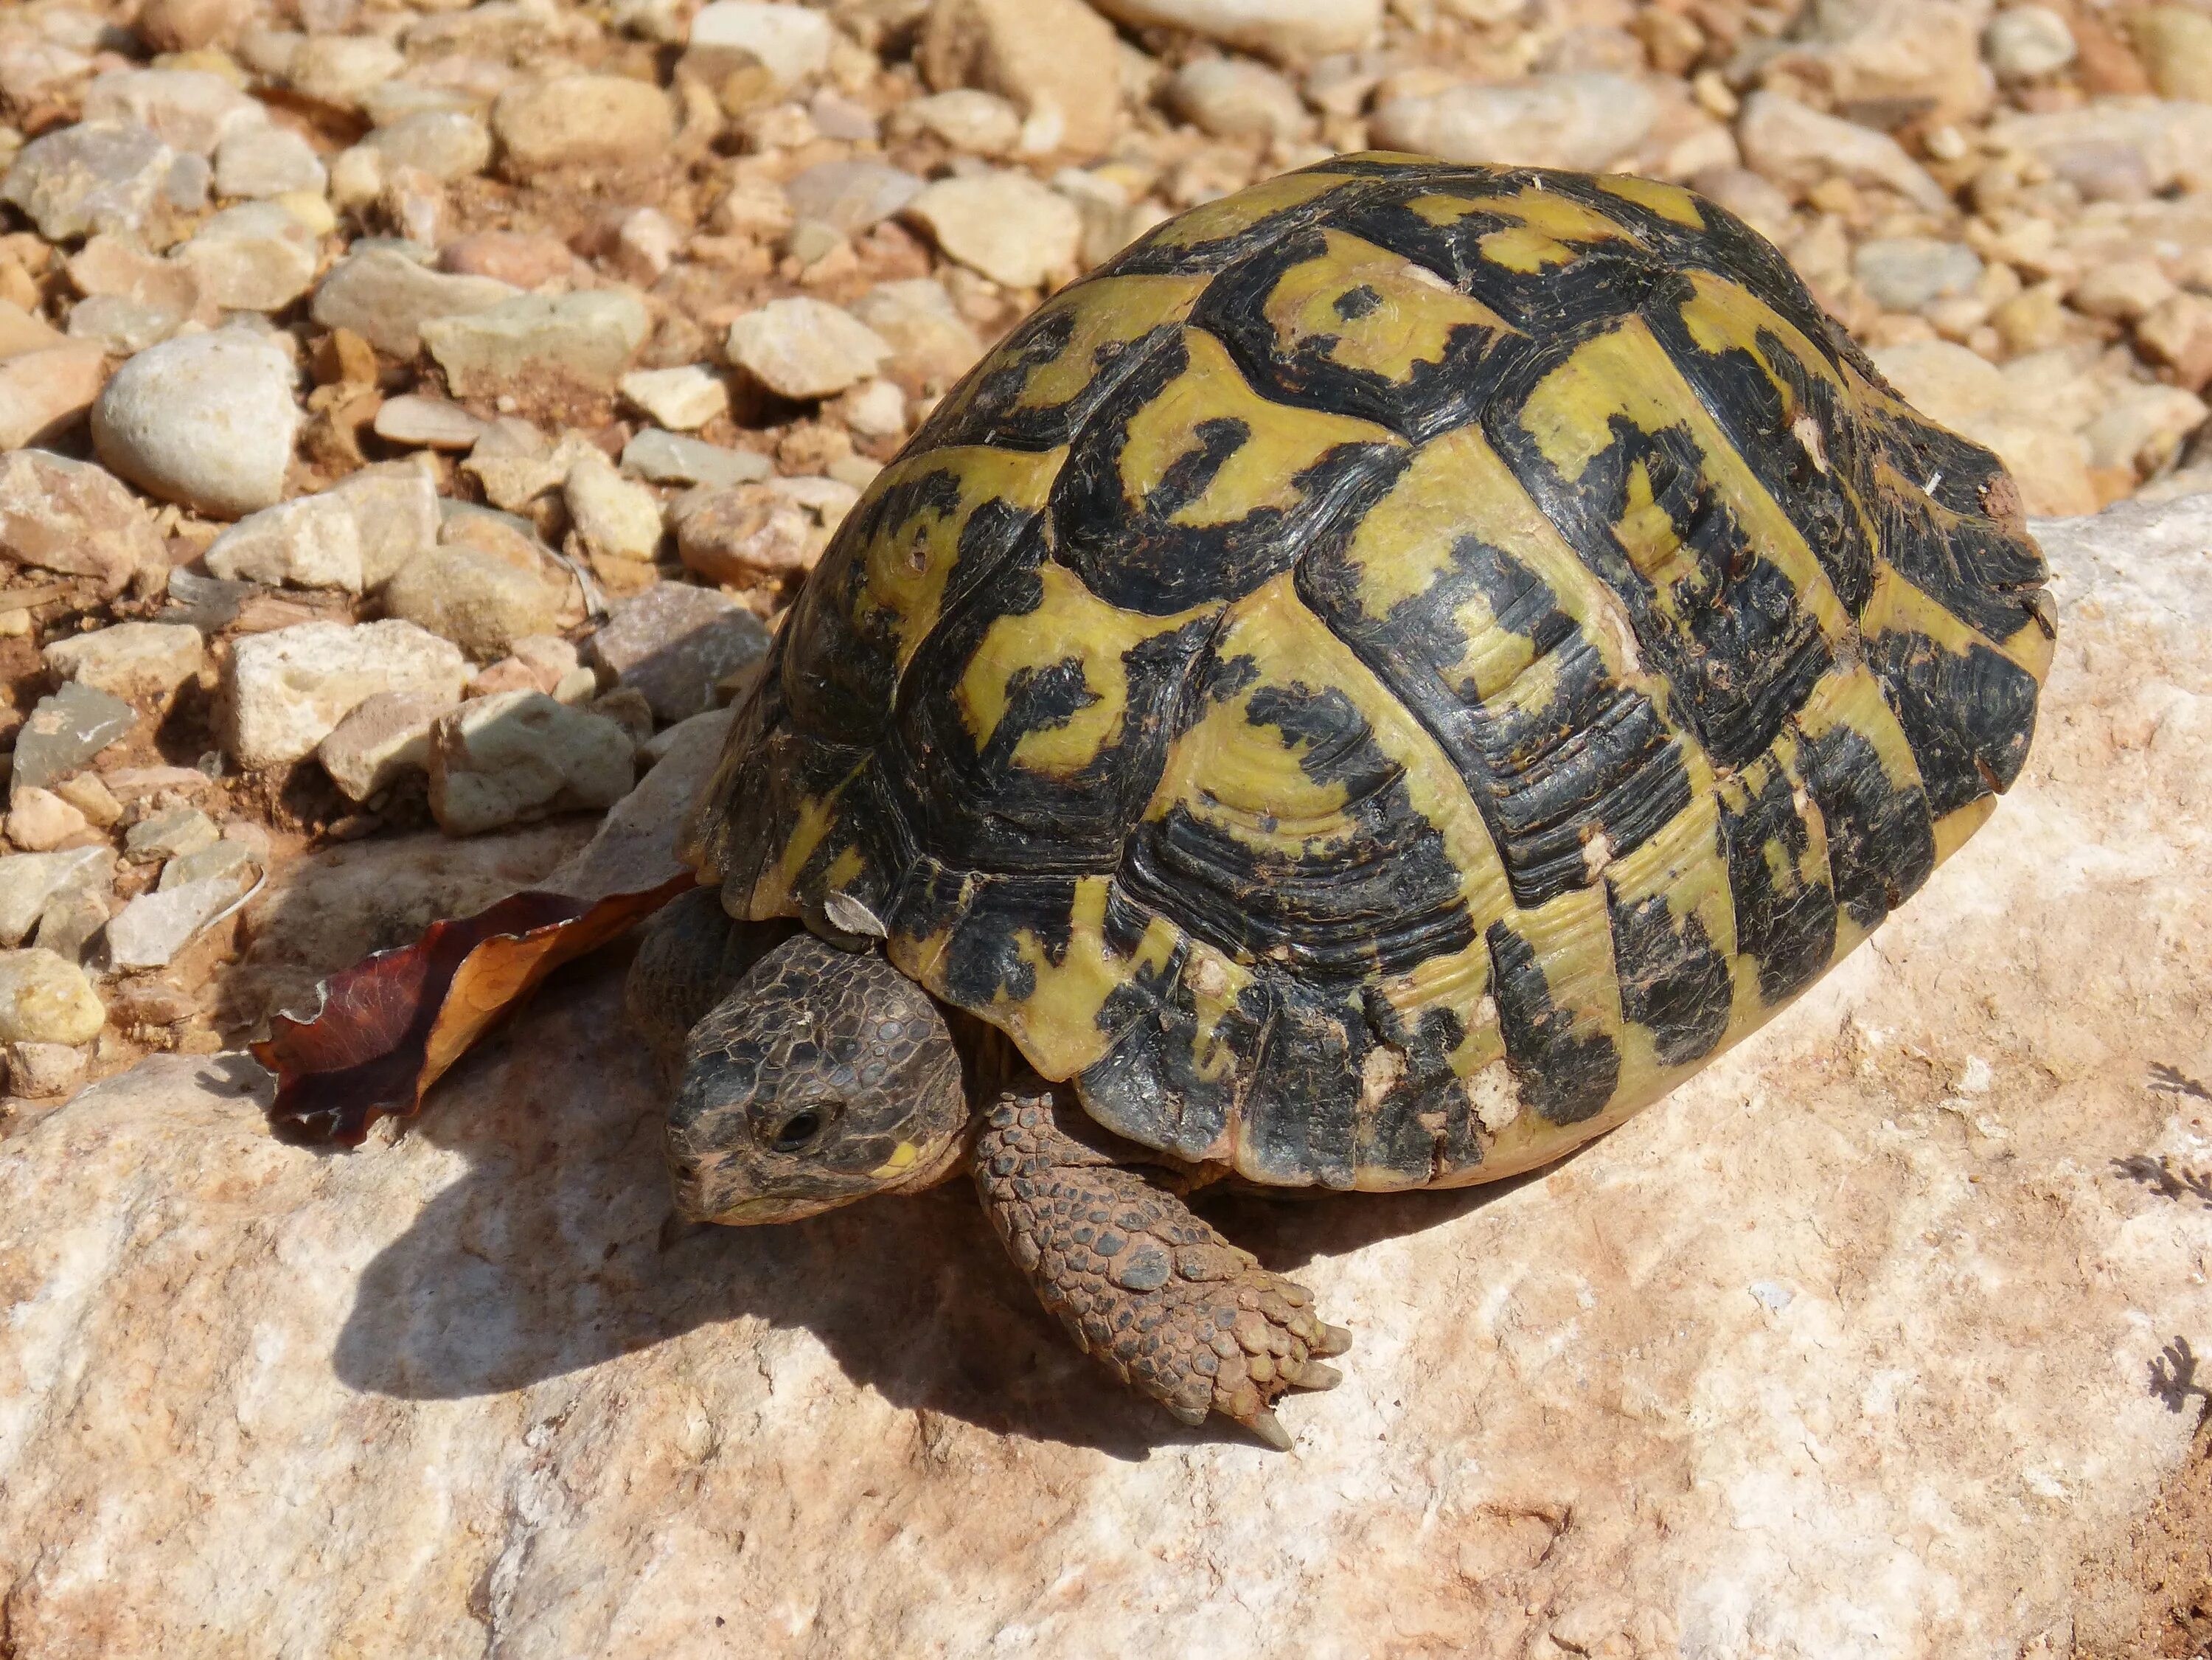 Left turtle. Средиземноморская черепаха Testudo Graeca. Средиземноморская сухопутная черепаха Никольского. Греческая сухопутная черепаха. Средиземноморская черепаха Никольского.